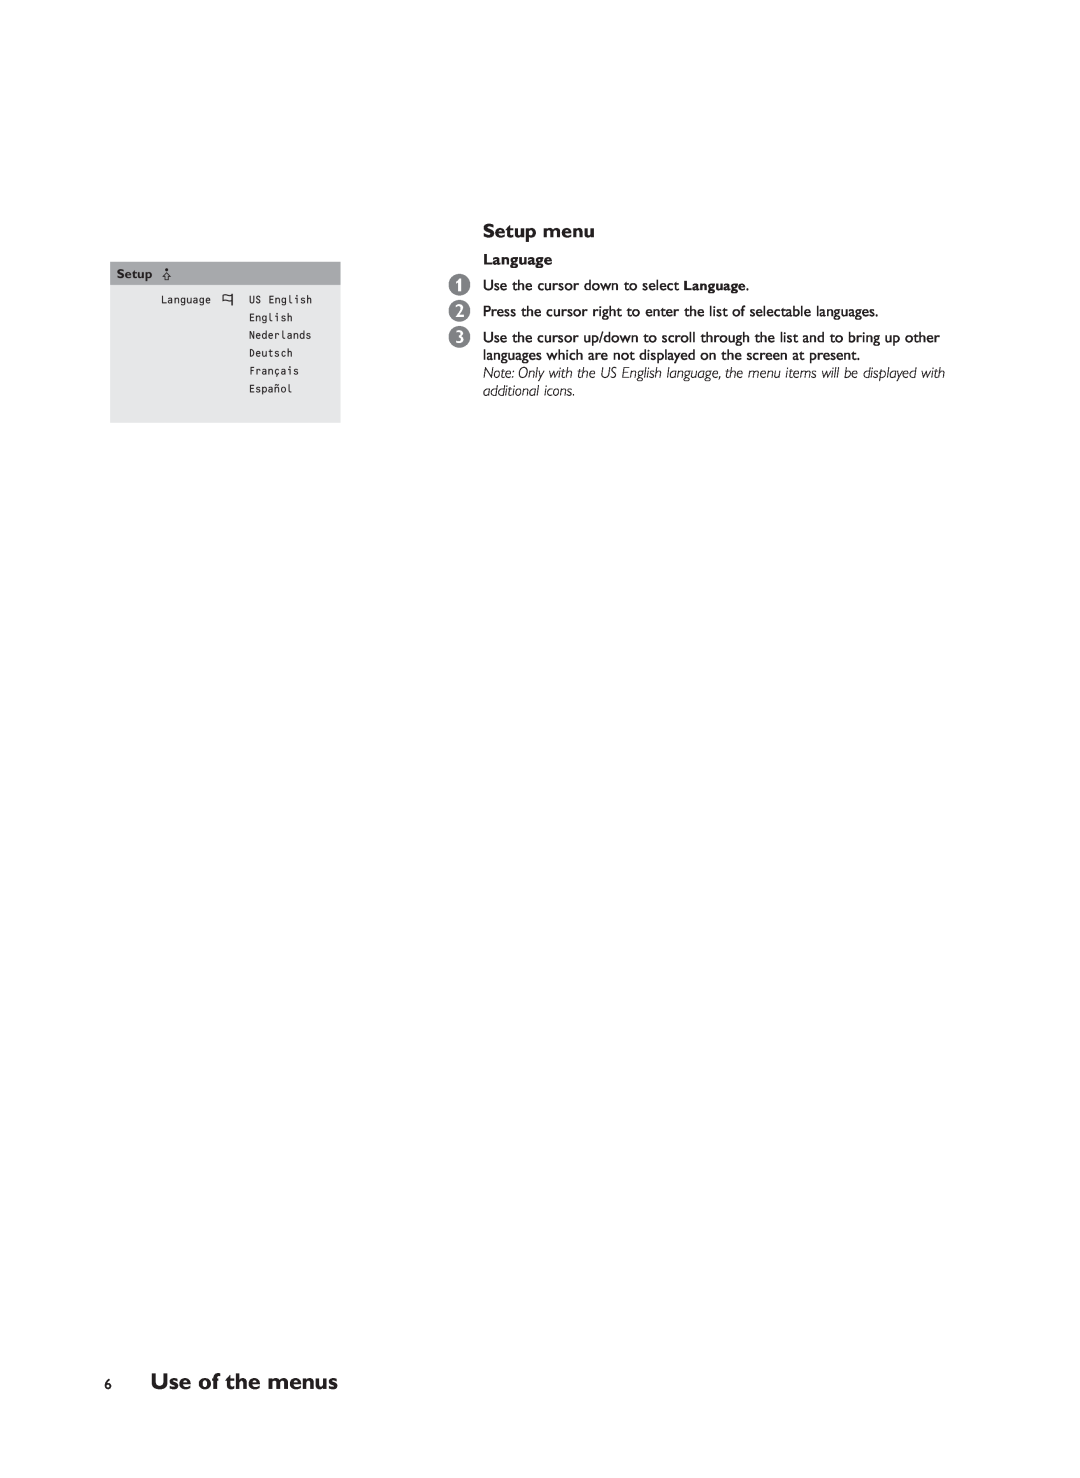 Philips RS232 manual Use of the menus, Setup menu 